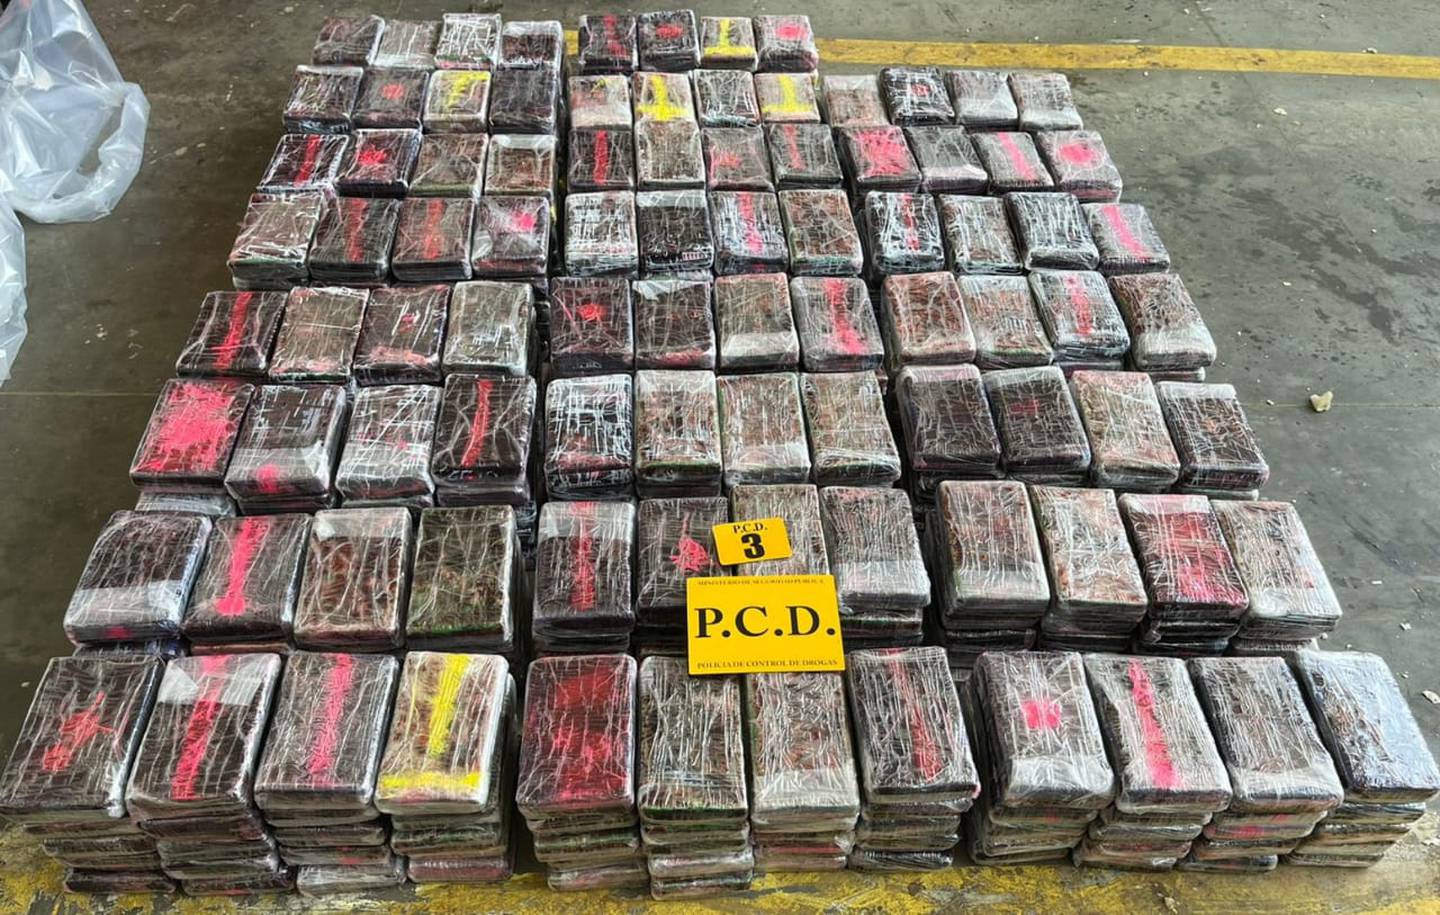 A la banda de seis personas, incluídos trabajadores de APM Terminals,  detenida el martes pasado, se les relaciona con este alijo de 1200 kilos de coca. Foto: MSP.